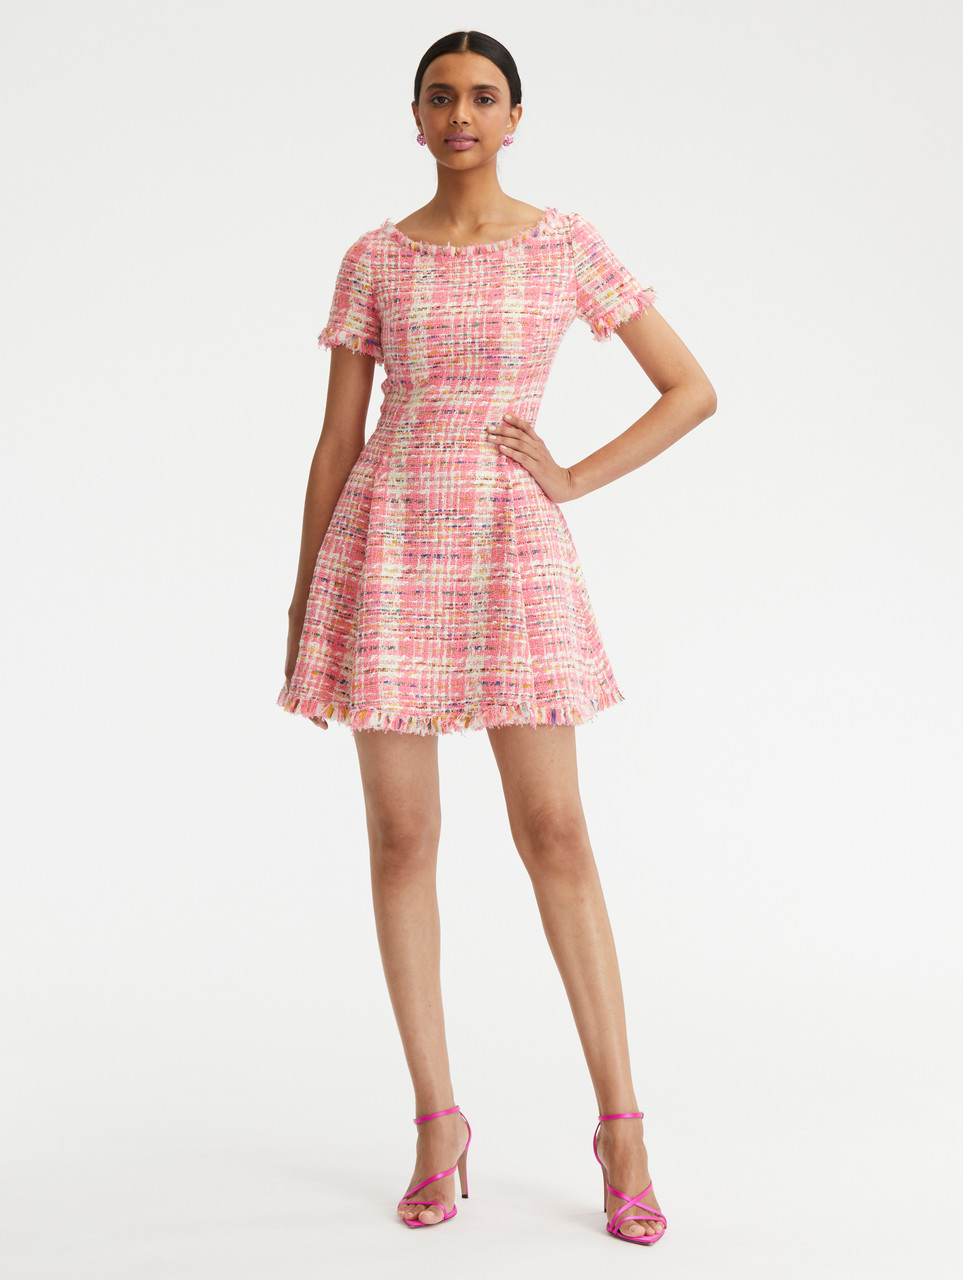 Oscar de la Renta Short Sleeve Multicolor Tweed Dress in Peony Multi, Size  14